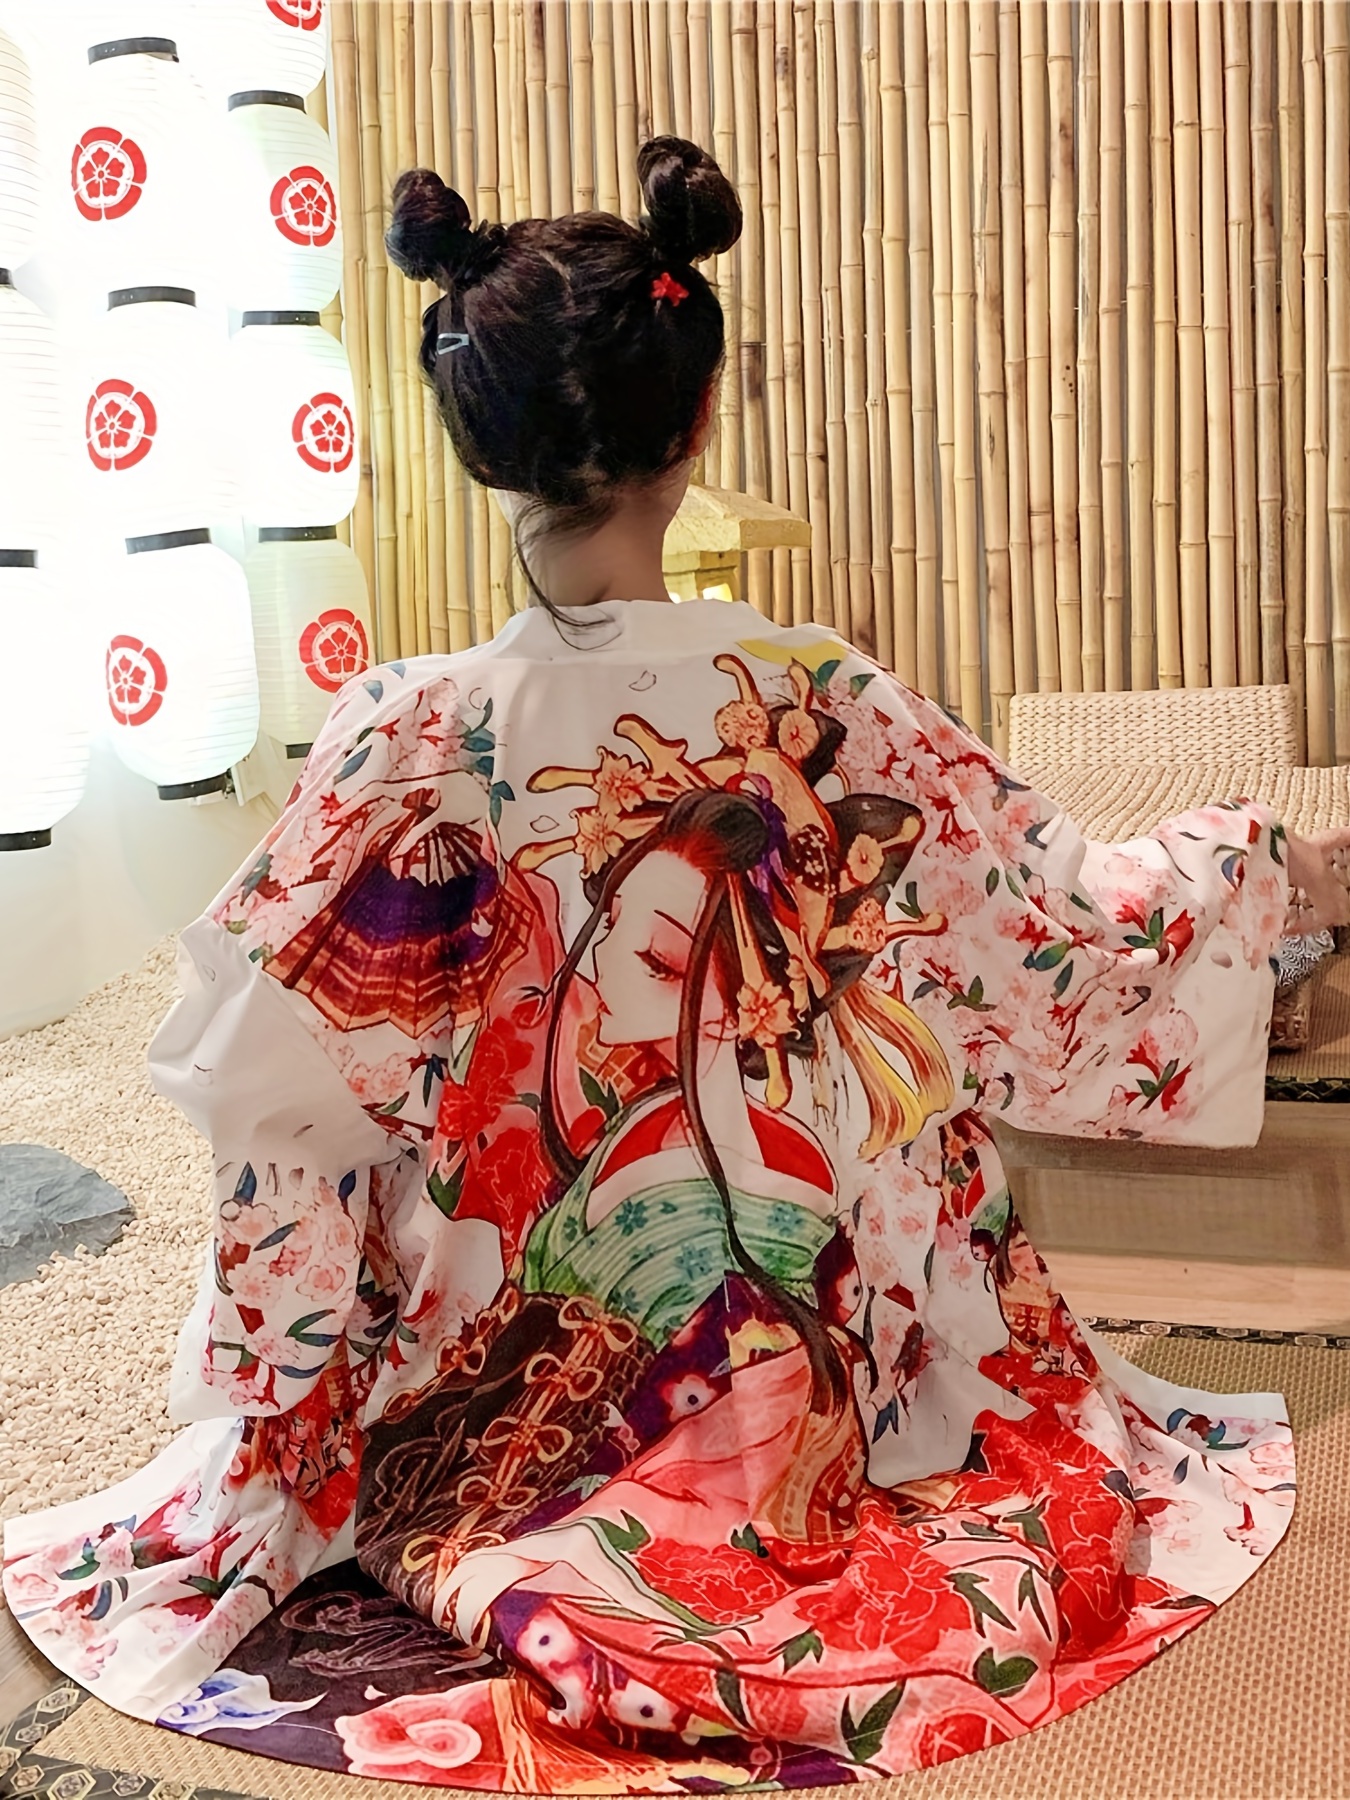 Anime Kimono